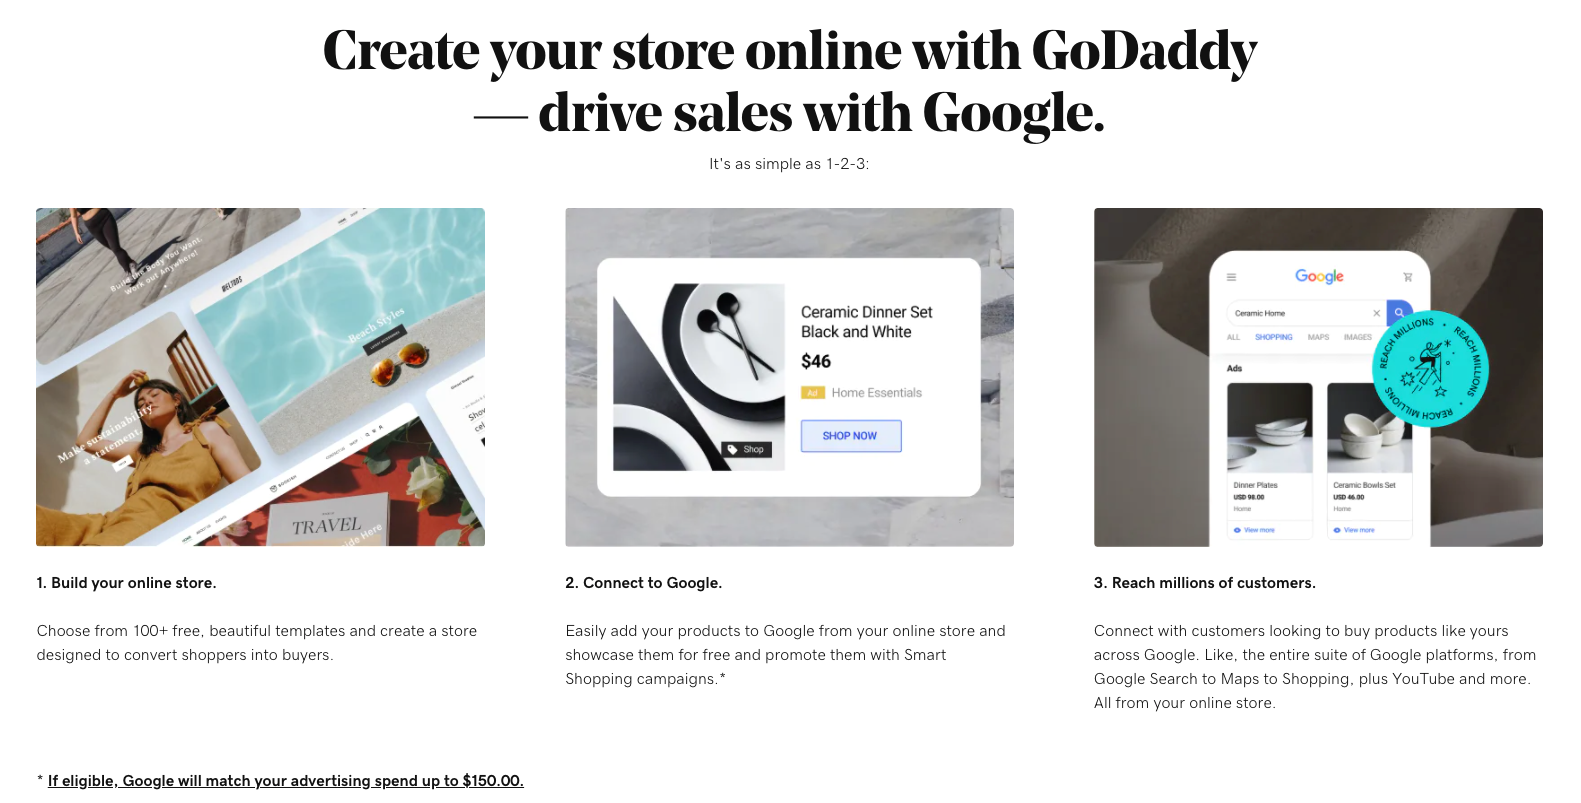 Et skjermbilde av markedsføringsskjermen som viser fordelene og enkelheten med å koble til Google Shopping